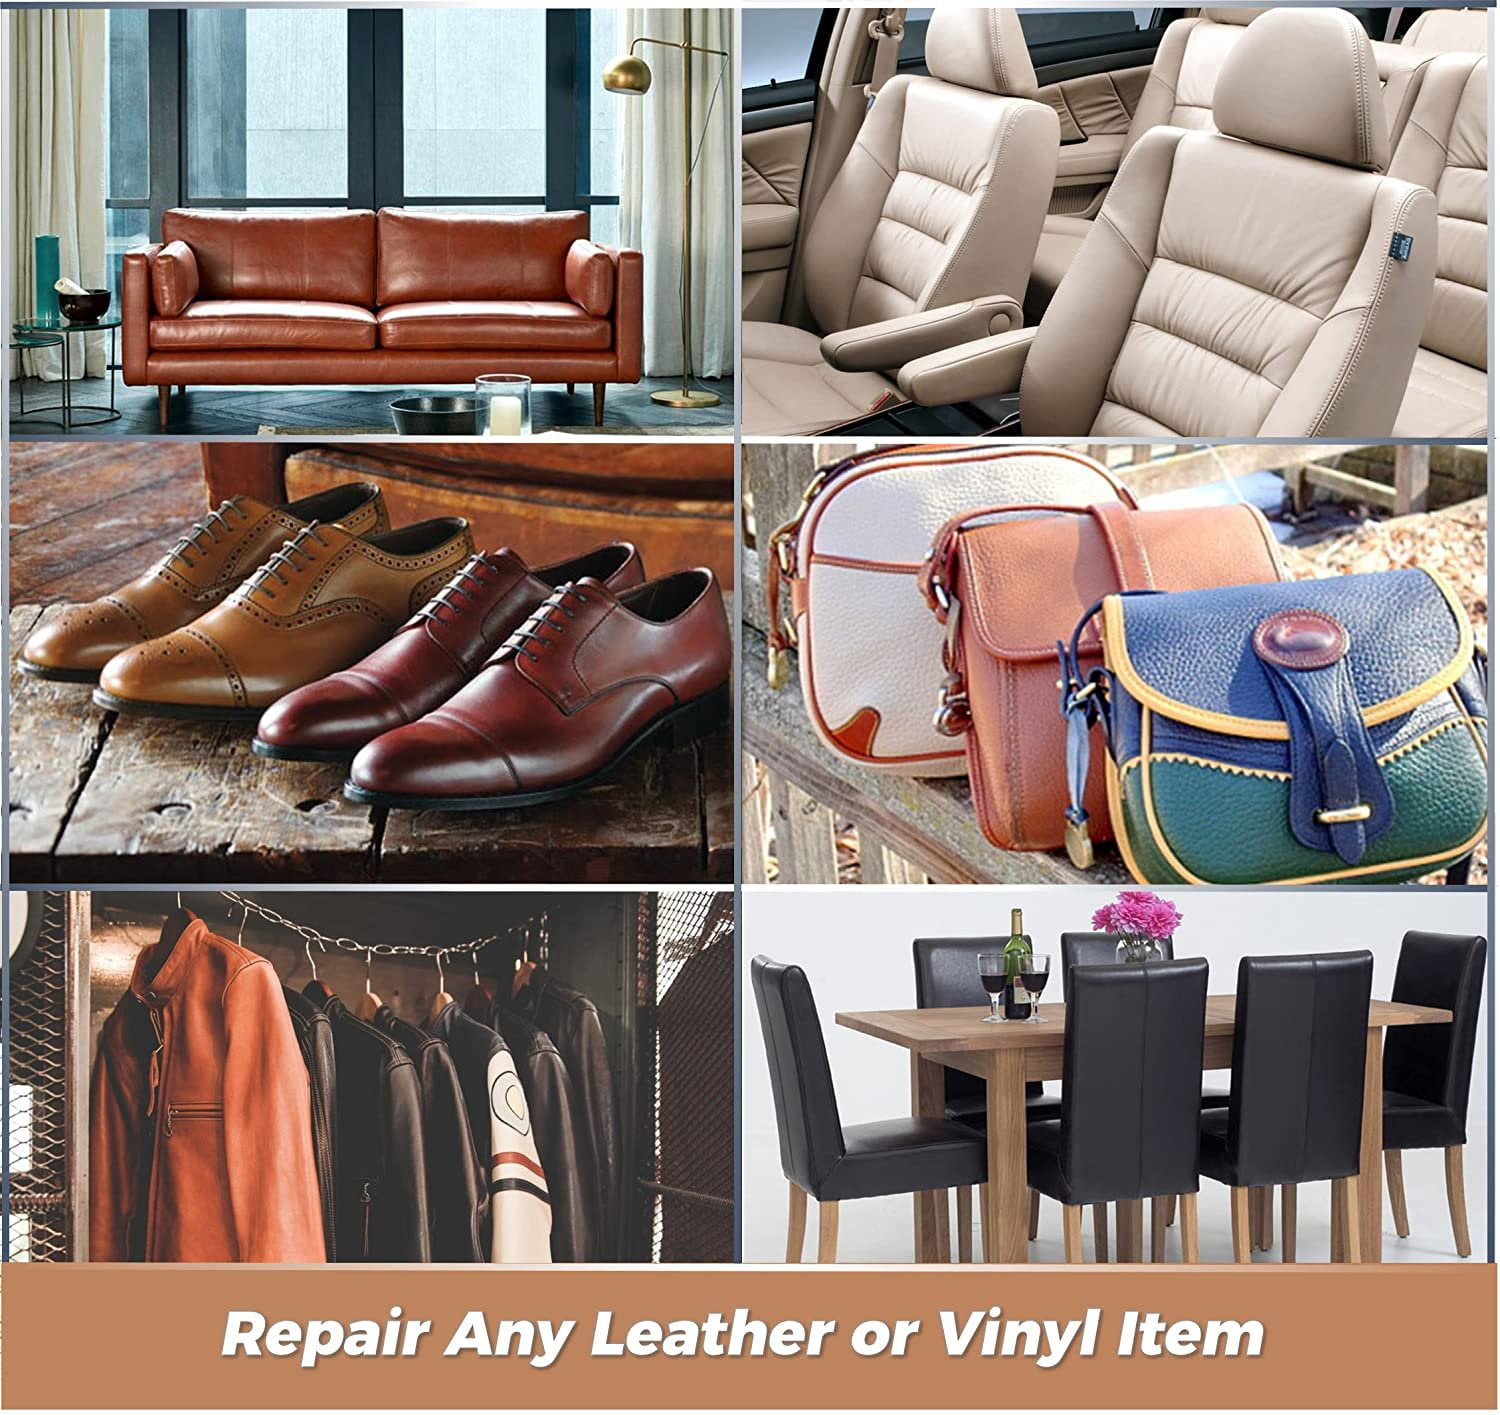 LUDUO Liquid Leather Vinyl Repair Kit Restorer Furniture Car Seats Sofa  Jacket Purse Belt Shoes Cleaner Skin Repair Refurbish